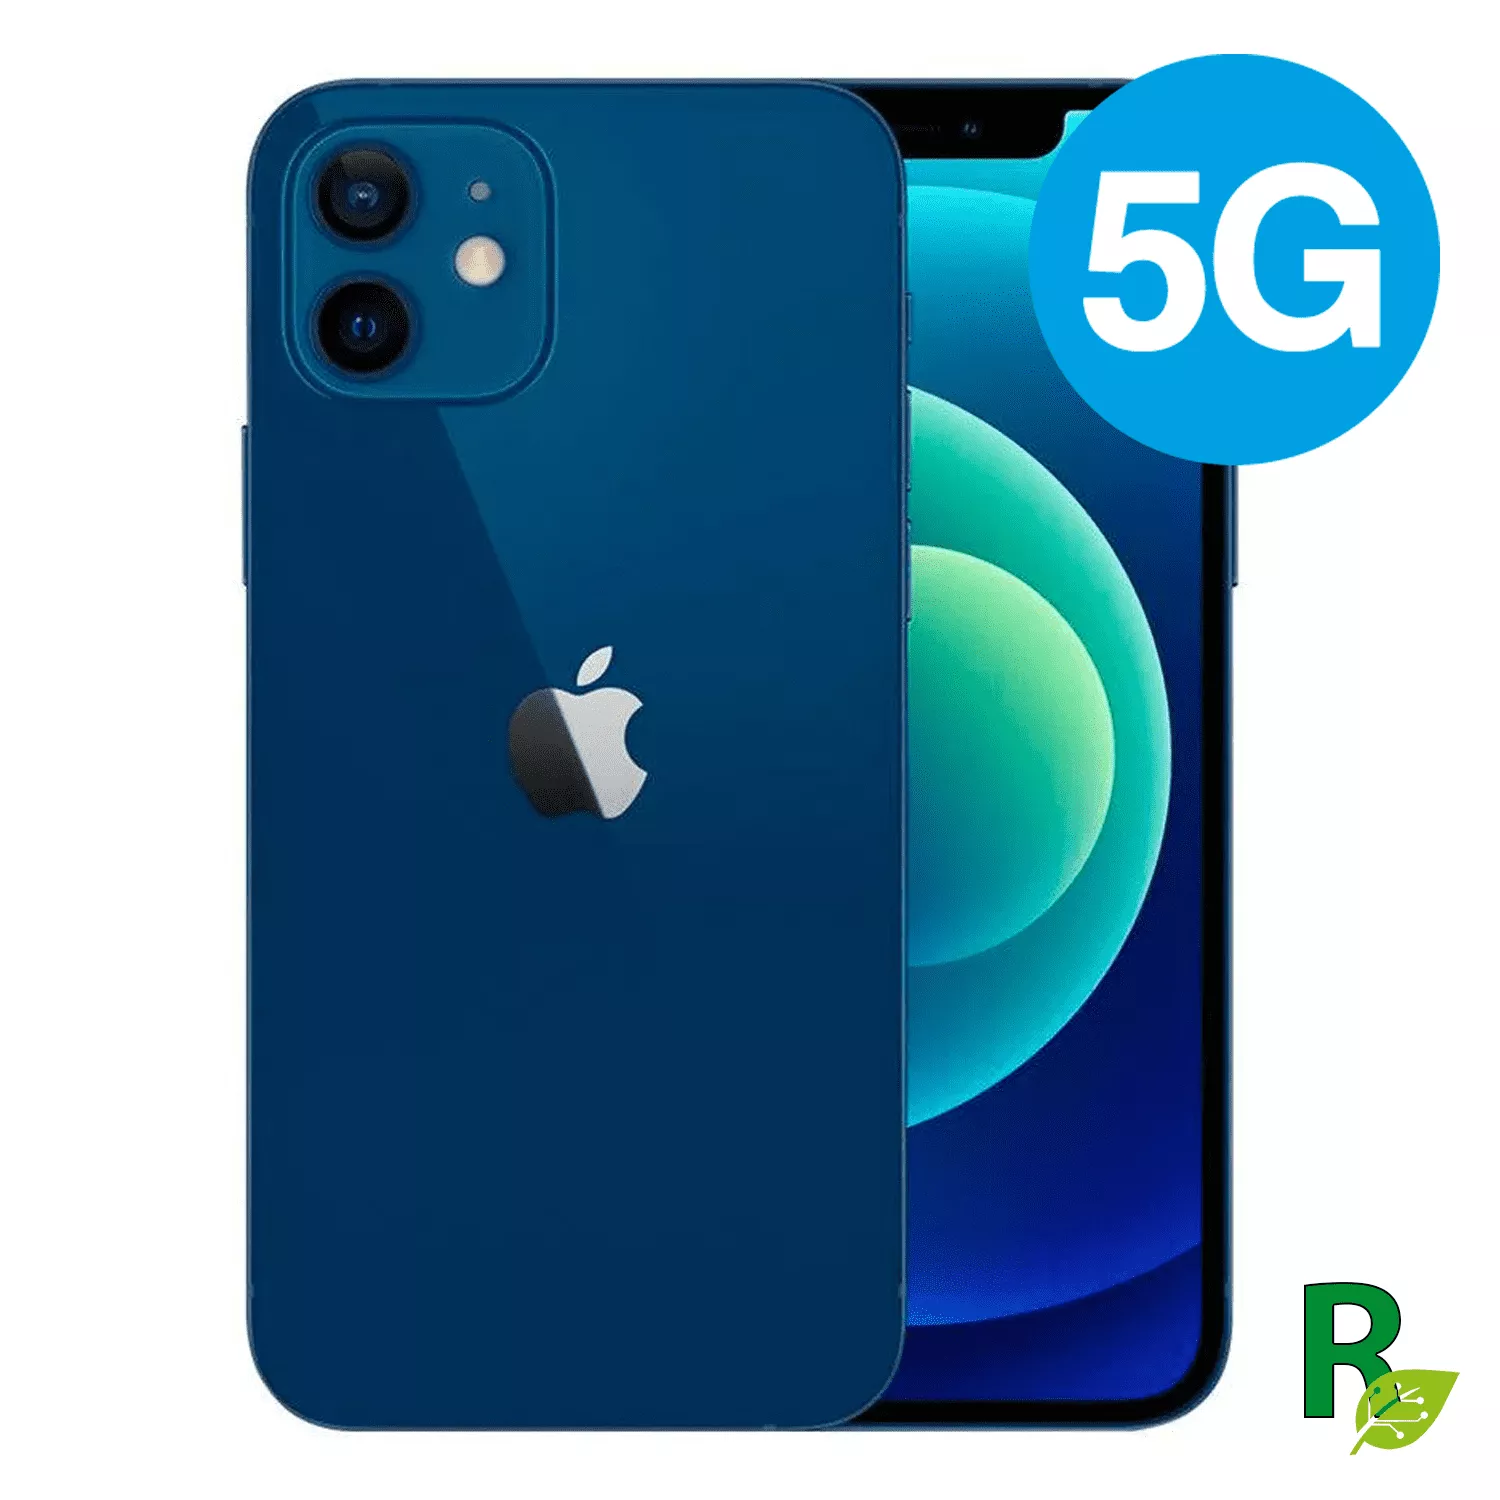 Celular Reacondicionado iPhone 12 64GB - Azul - 12BLUE64AB - Cat. AB 1264IPH5